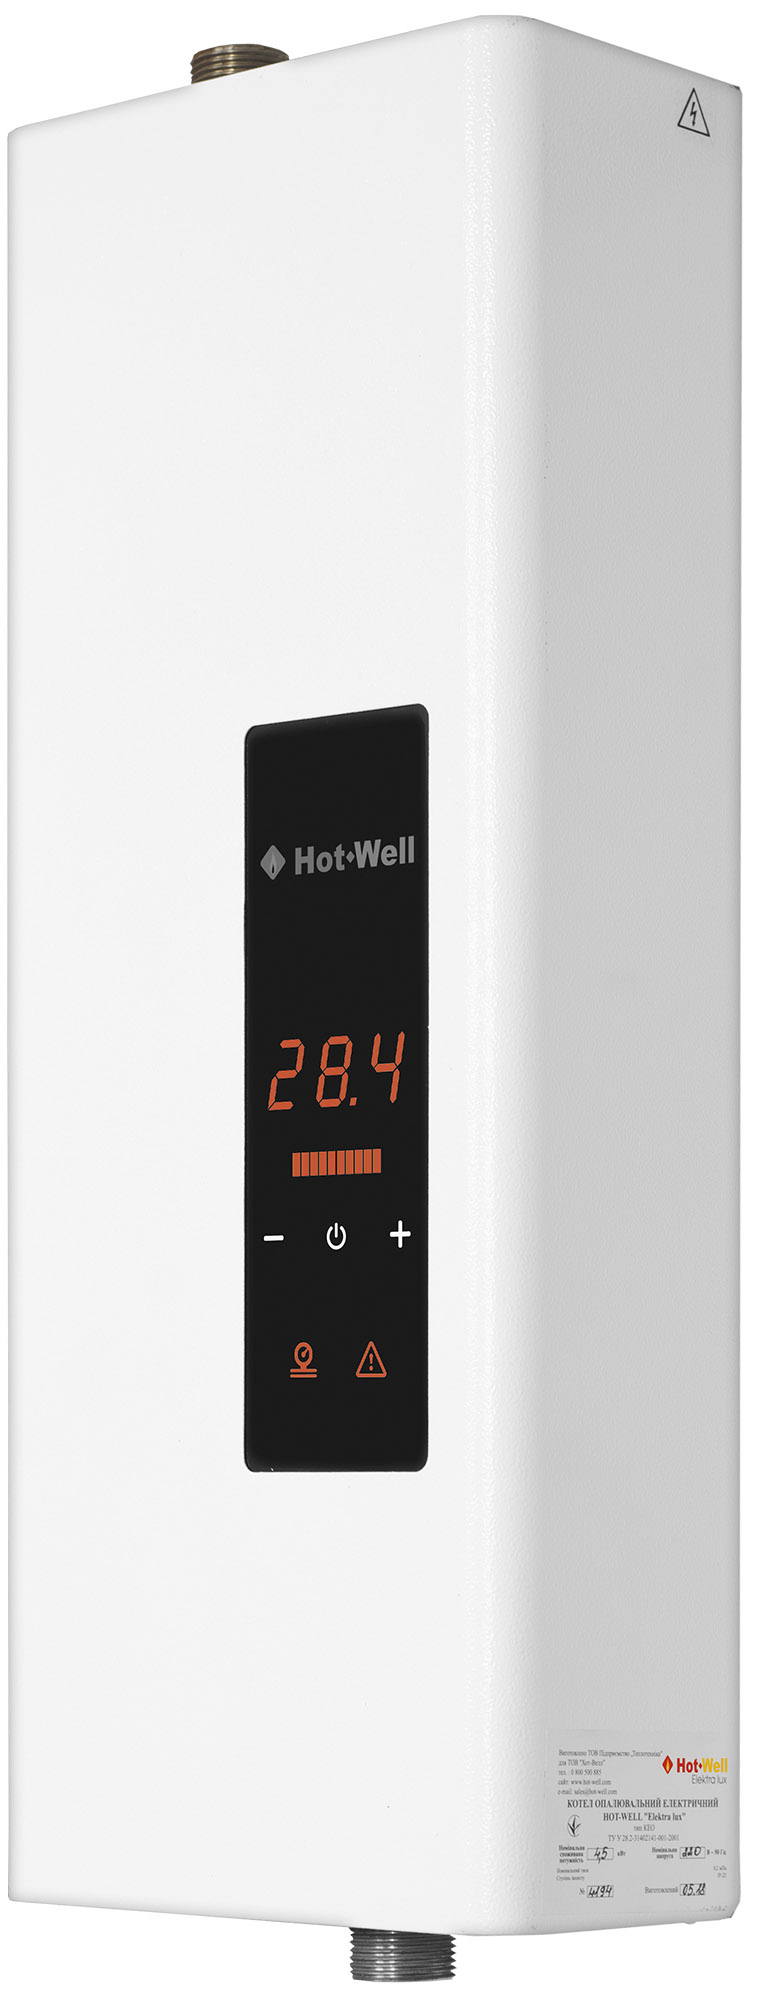 Котел Hot-Well електричний Hot-Well Elektra LUX S 24/380